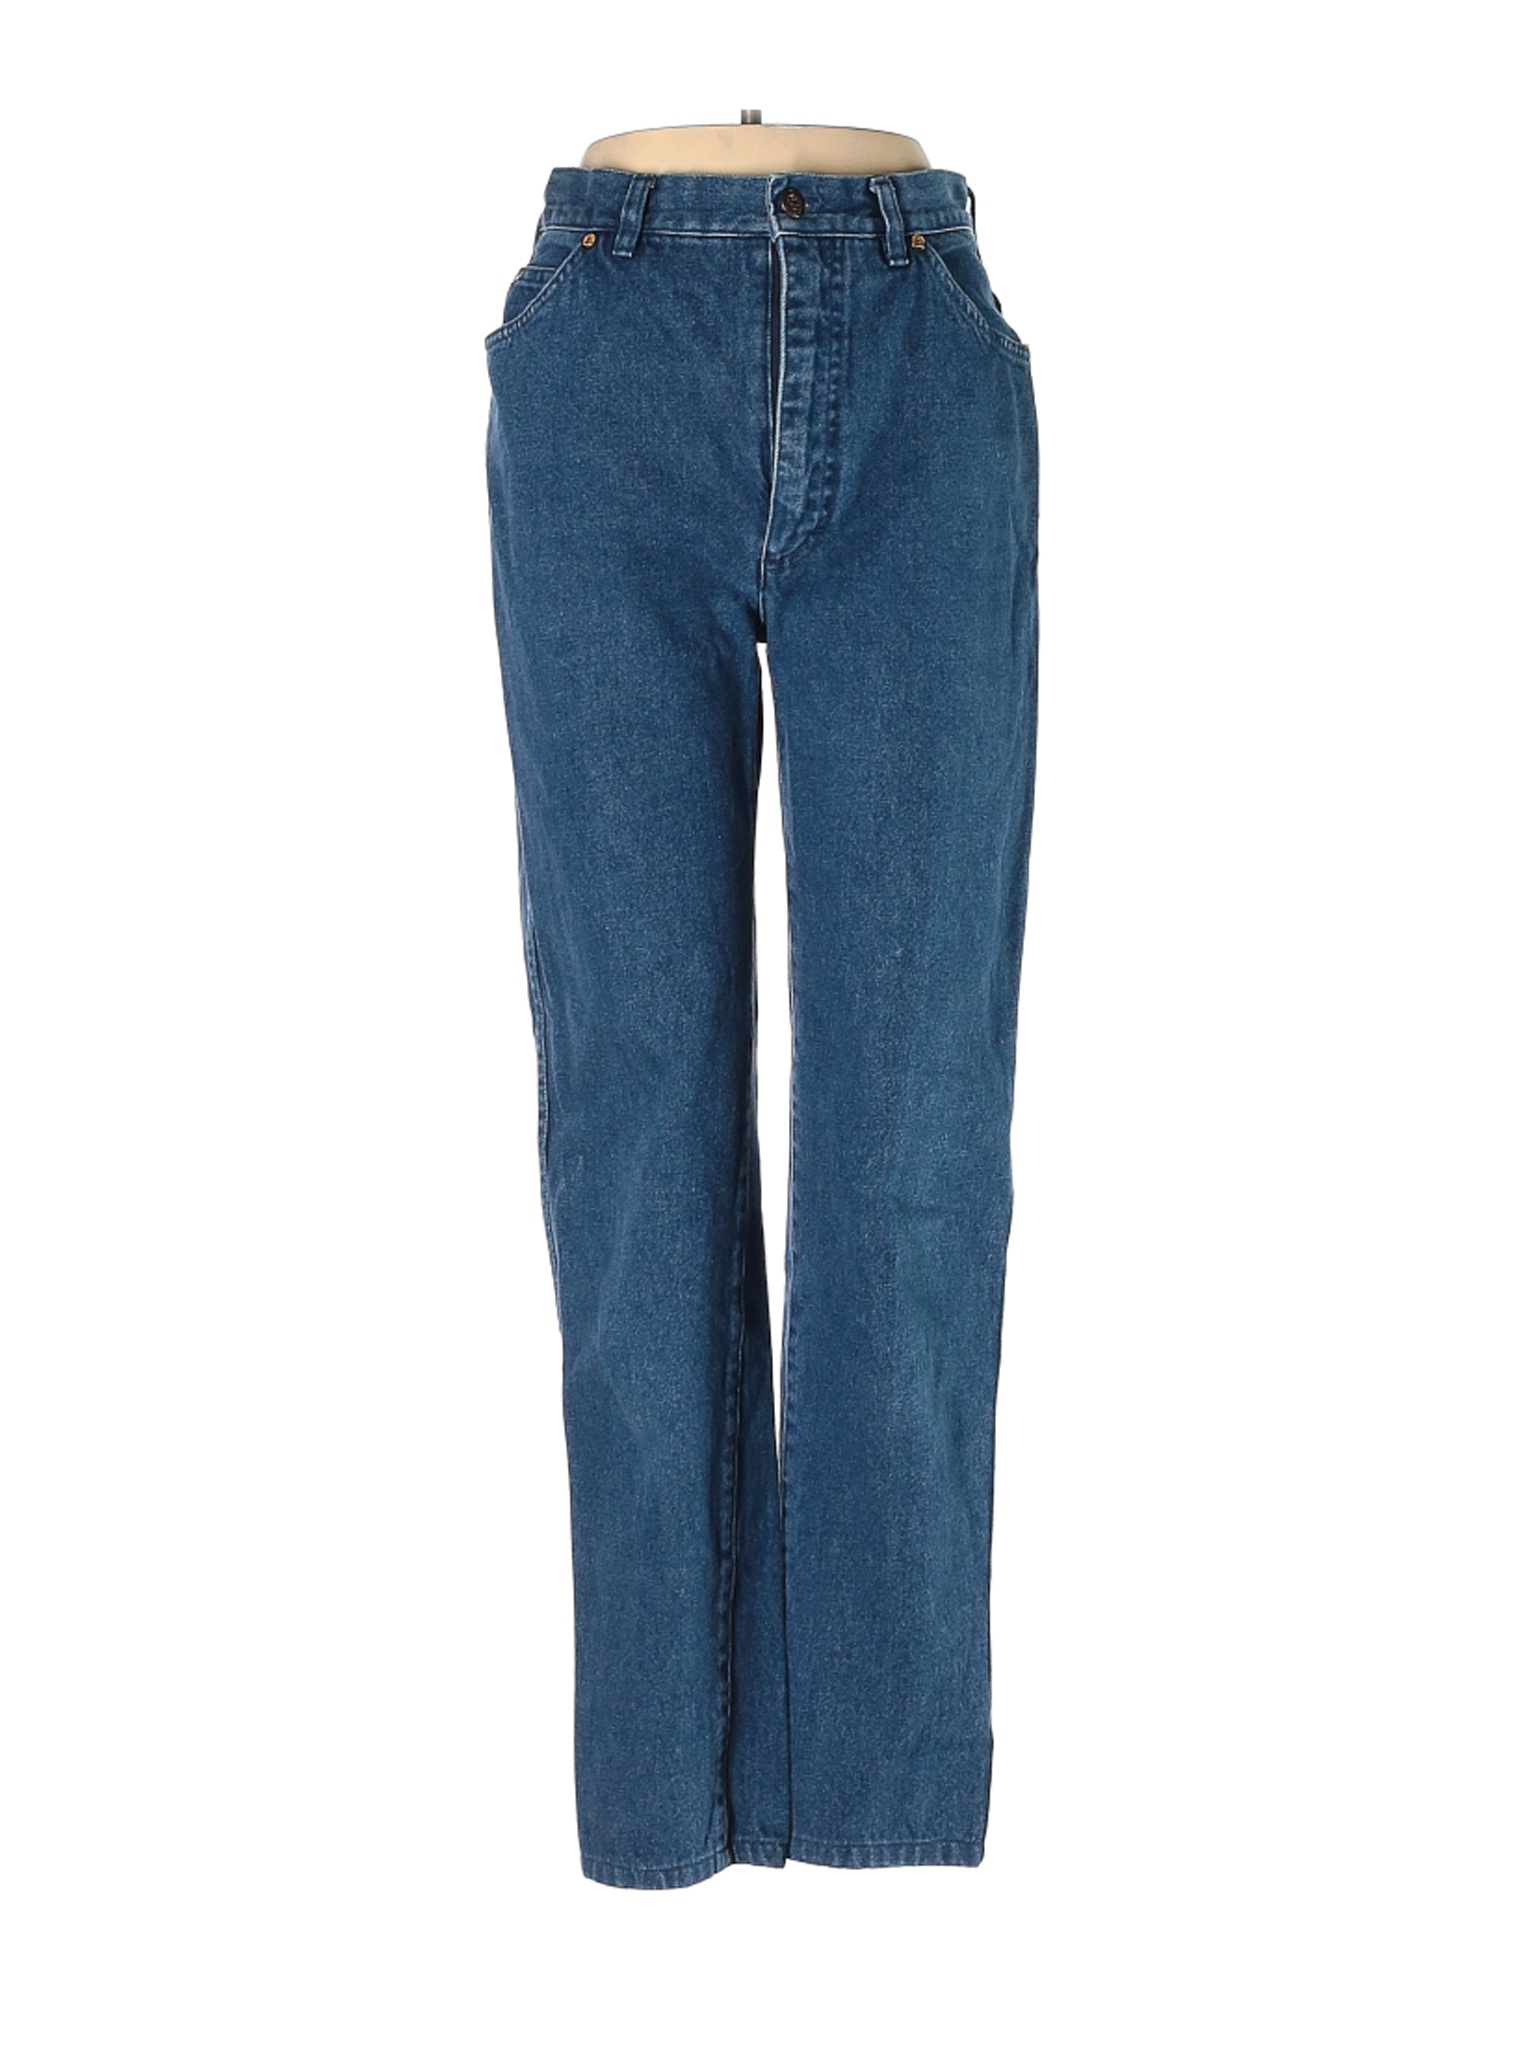 Escada Sport Women Blue Jeans 36 eur | eBay